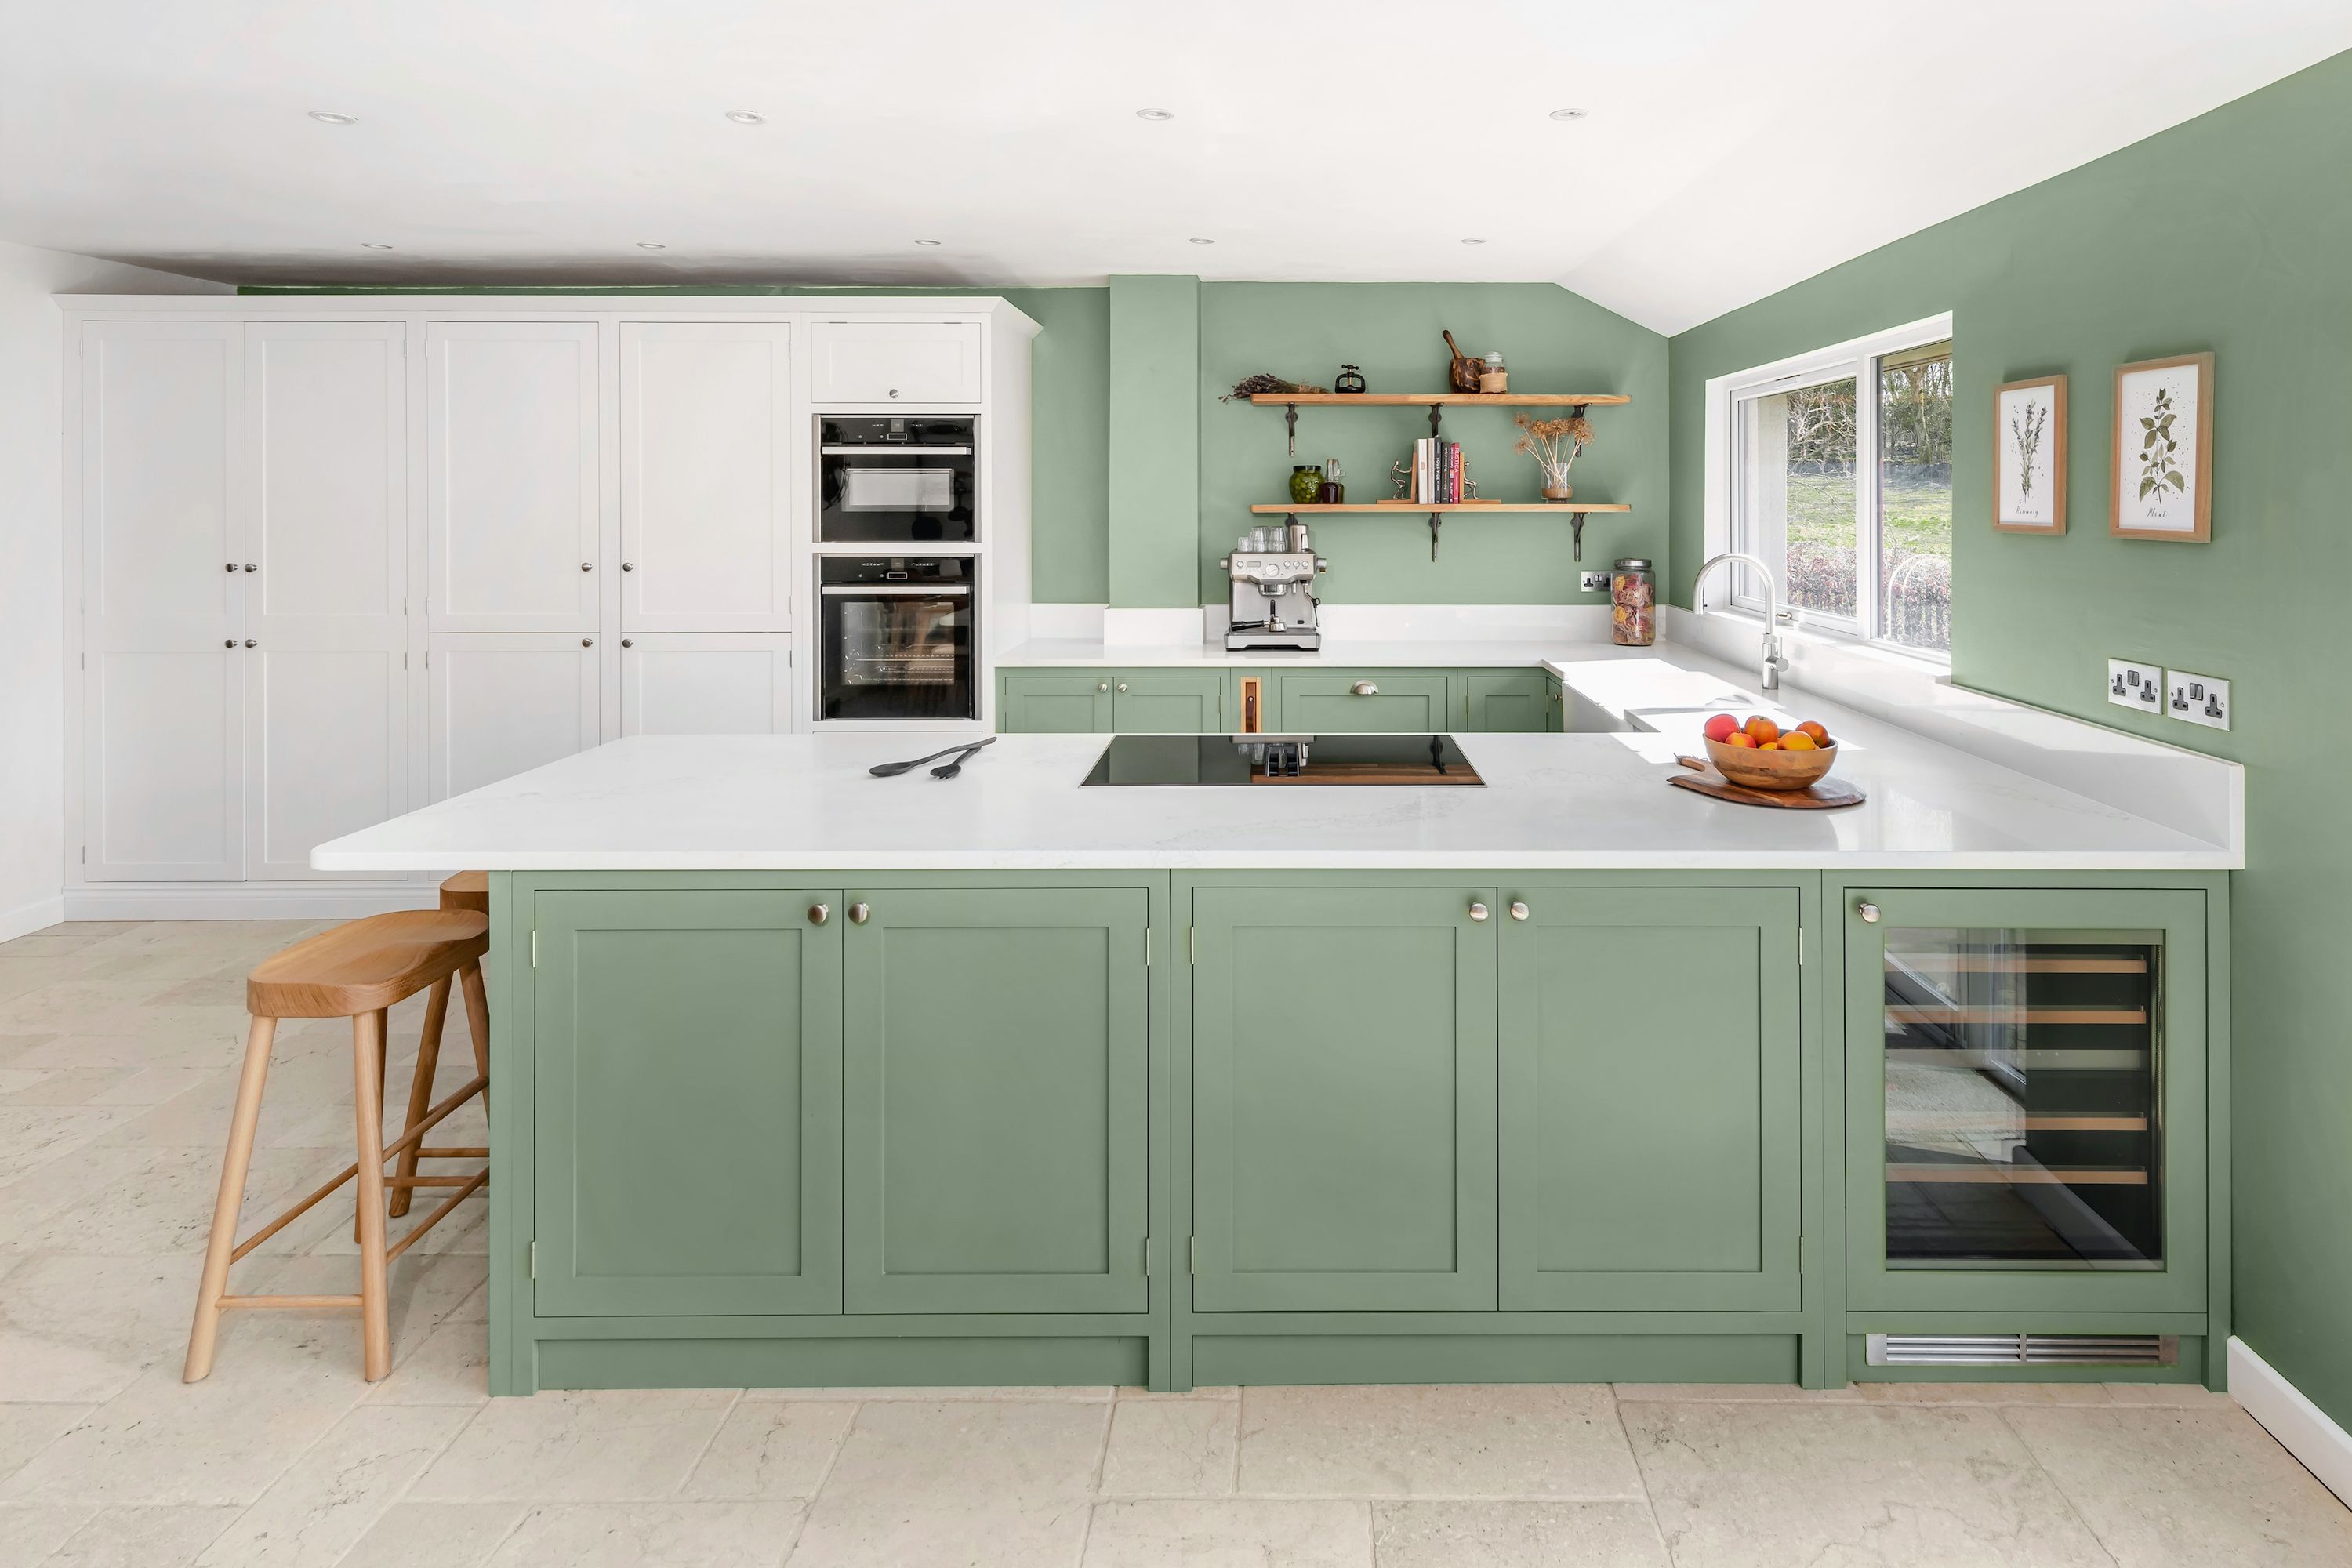 Tis So Sweet: Kitchen Ideas  Green kitchen decor, Kitchen colors, Home  decor